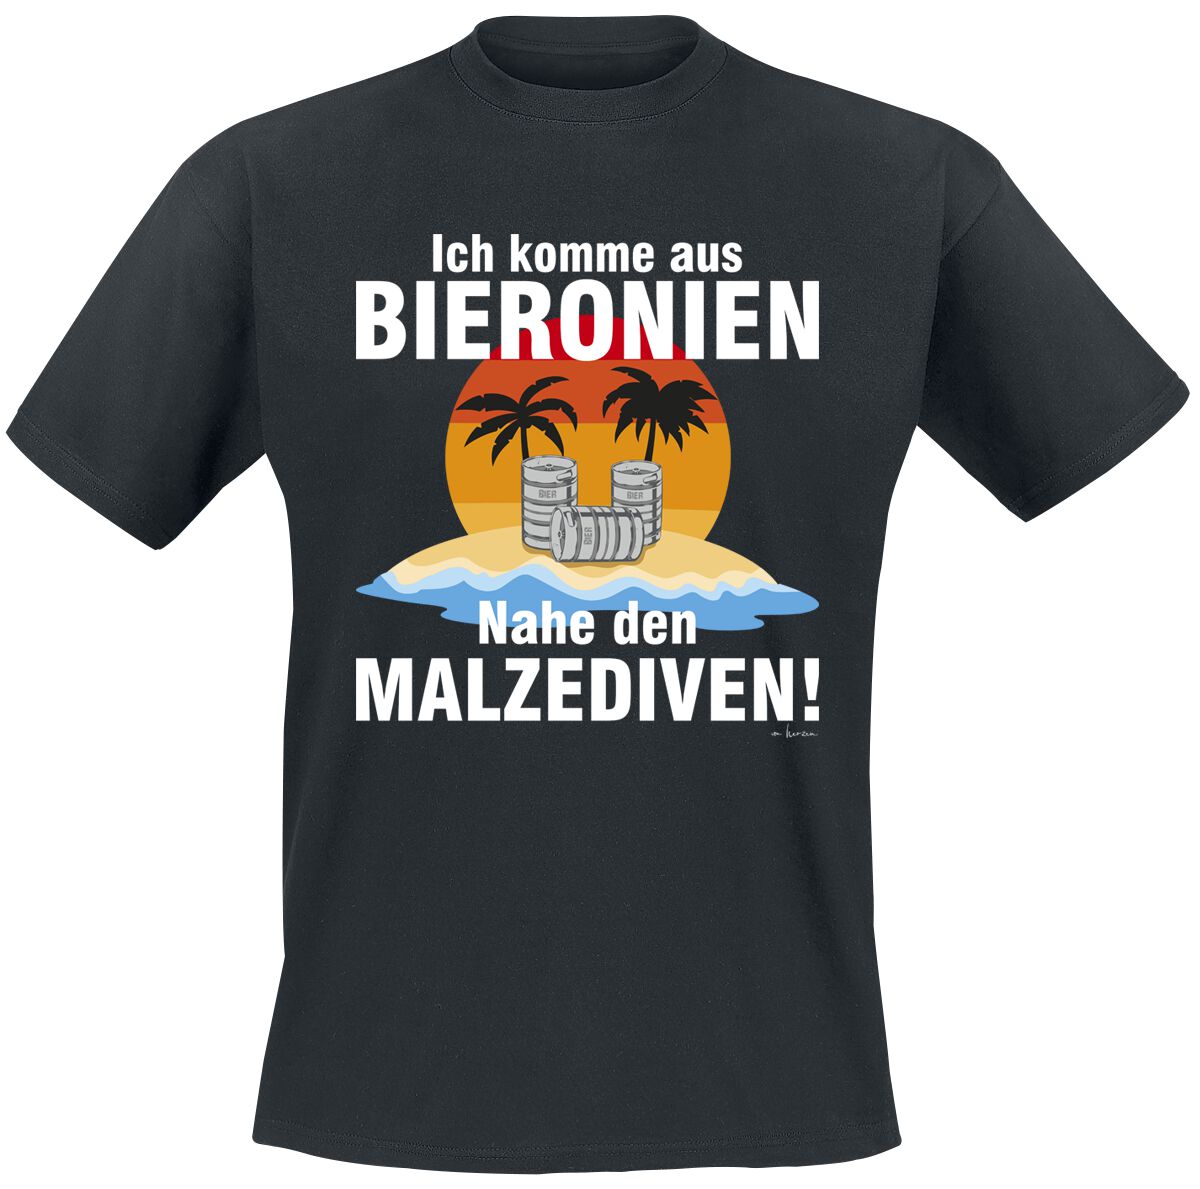 Alkohol & Party T-Shirt - Ich komme aus Bierkonien - M bis 5XL - für Männer - Größe 3XL - schwarz